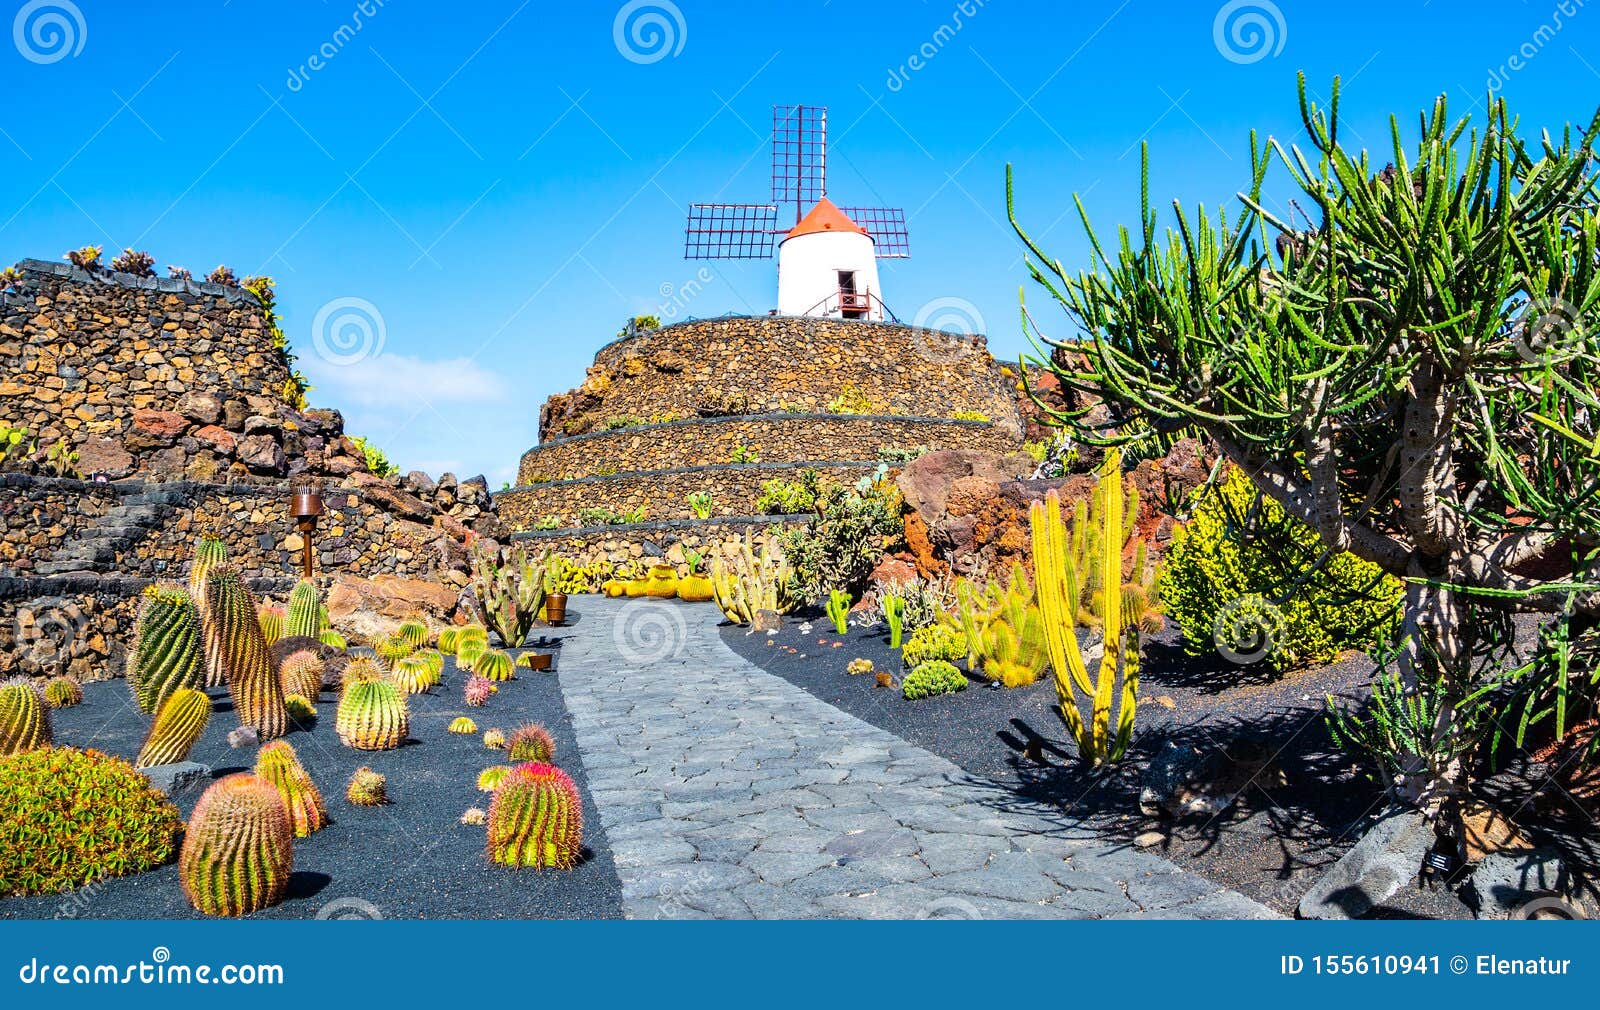 amazing view of tropical cactus garden jardin de cactus in guatiza village. location: lanzarote, canary islands, spain. artistic